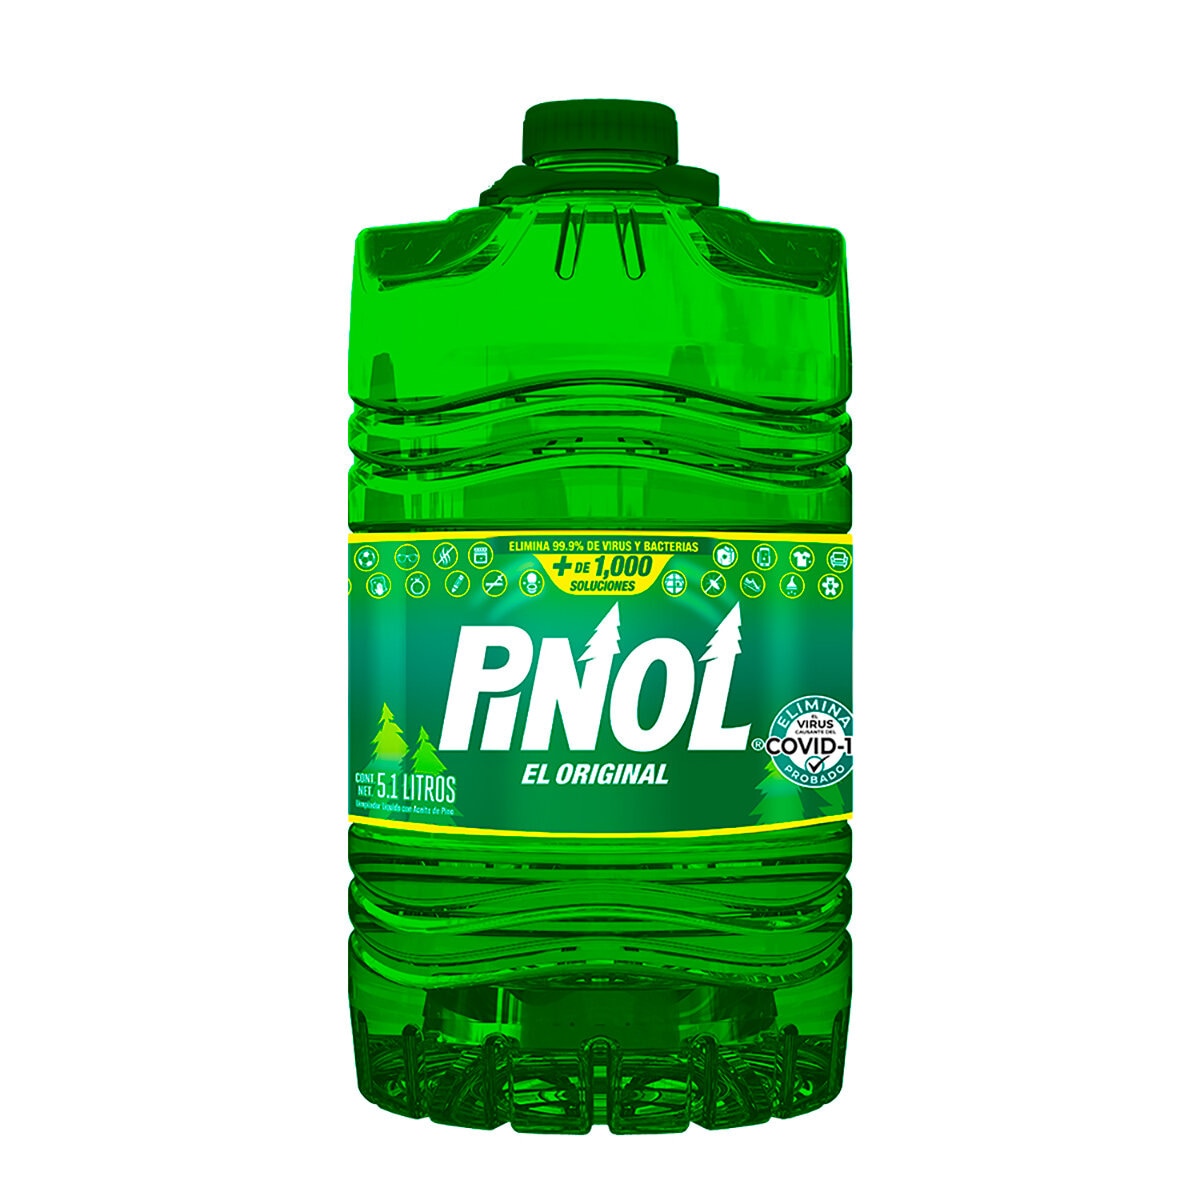 Pinol El Original Limpiador Multiusos  Desinfectante 5.1 l